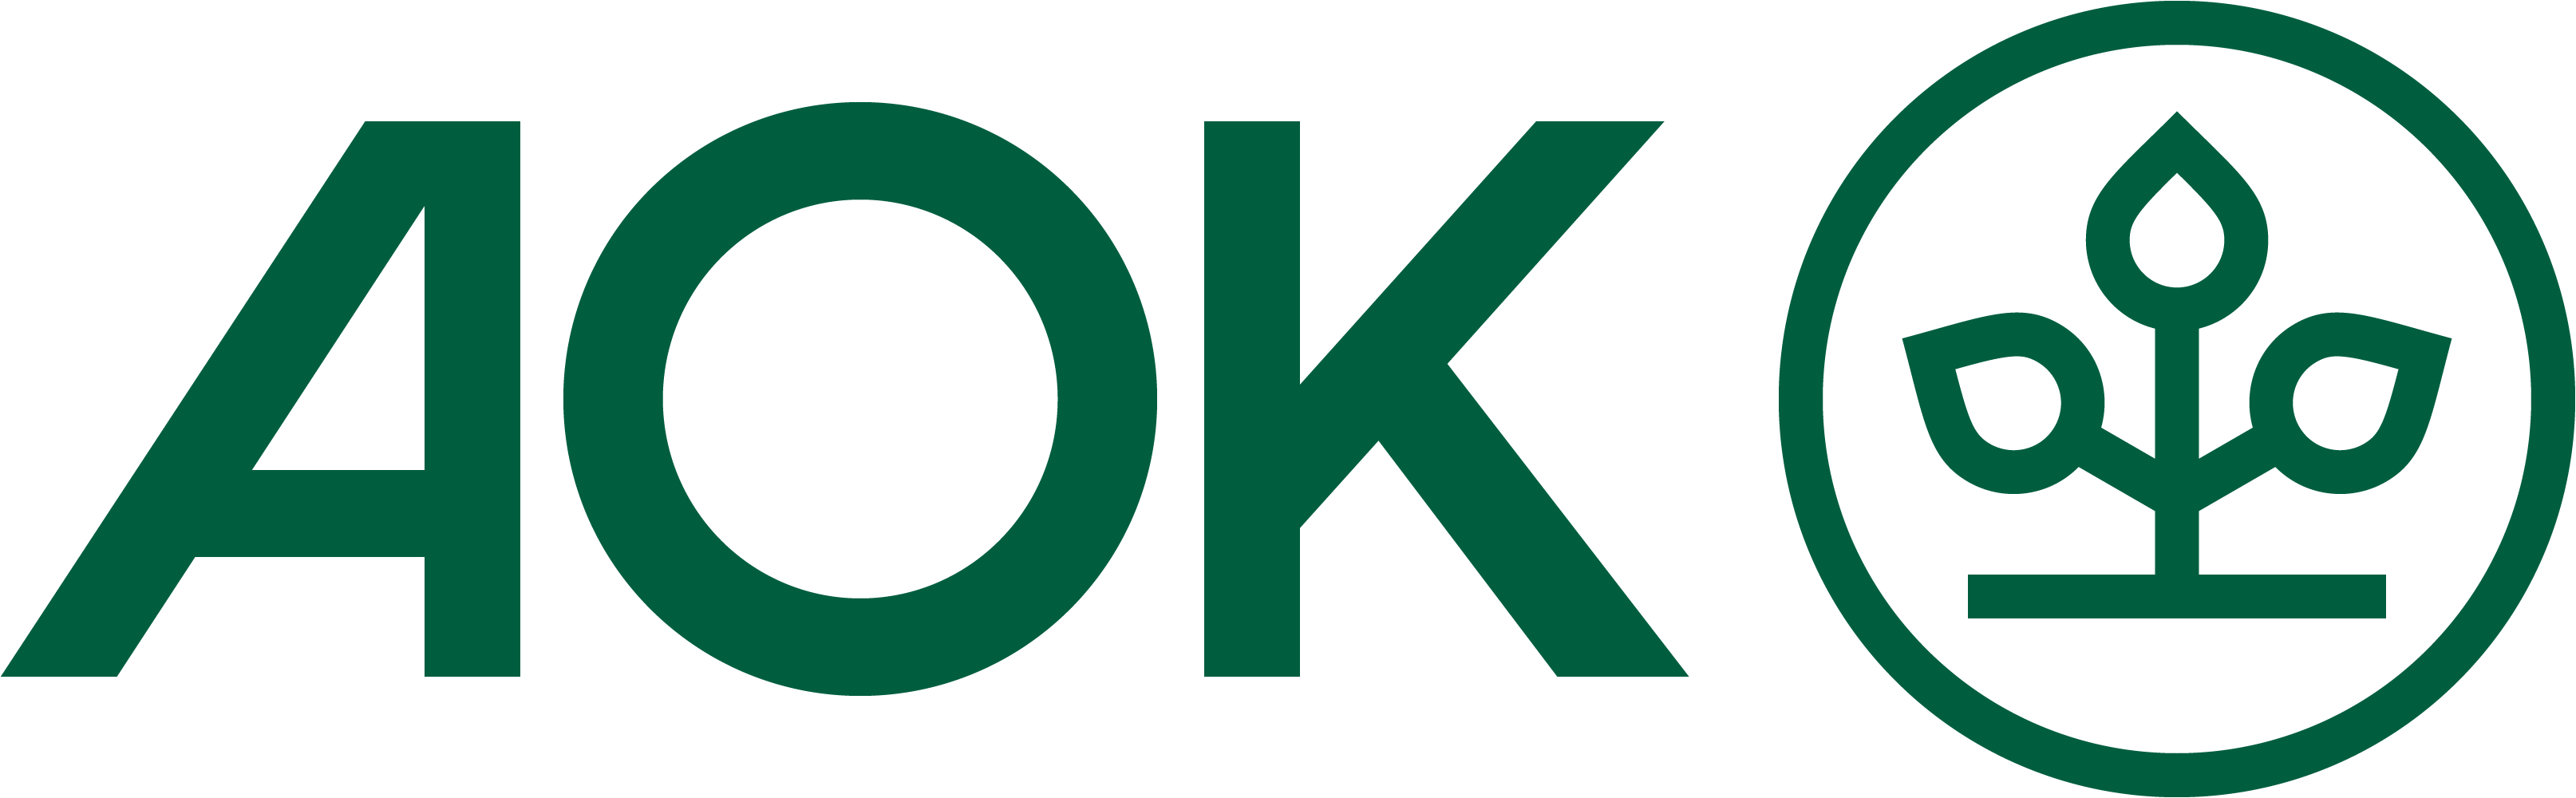 AOK Die Gesundheitskasse logo